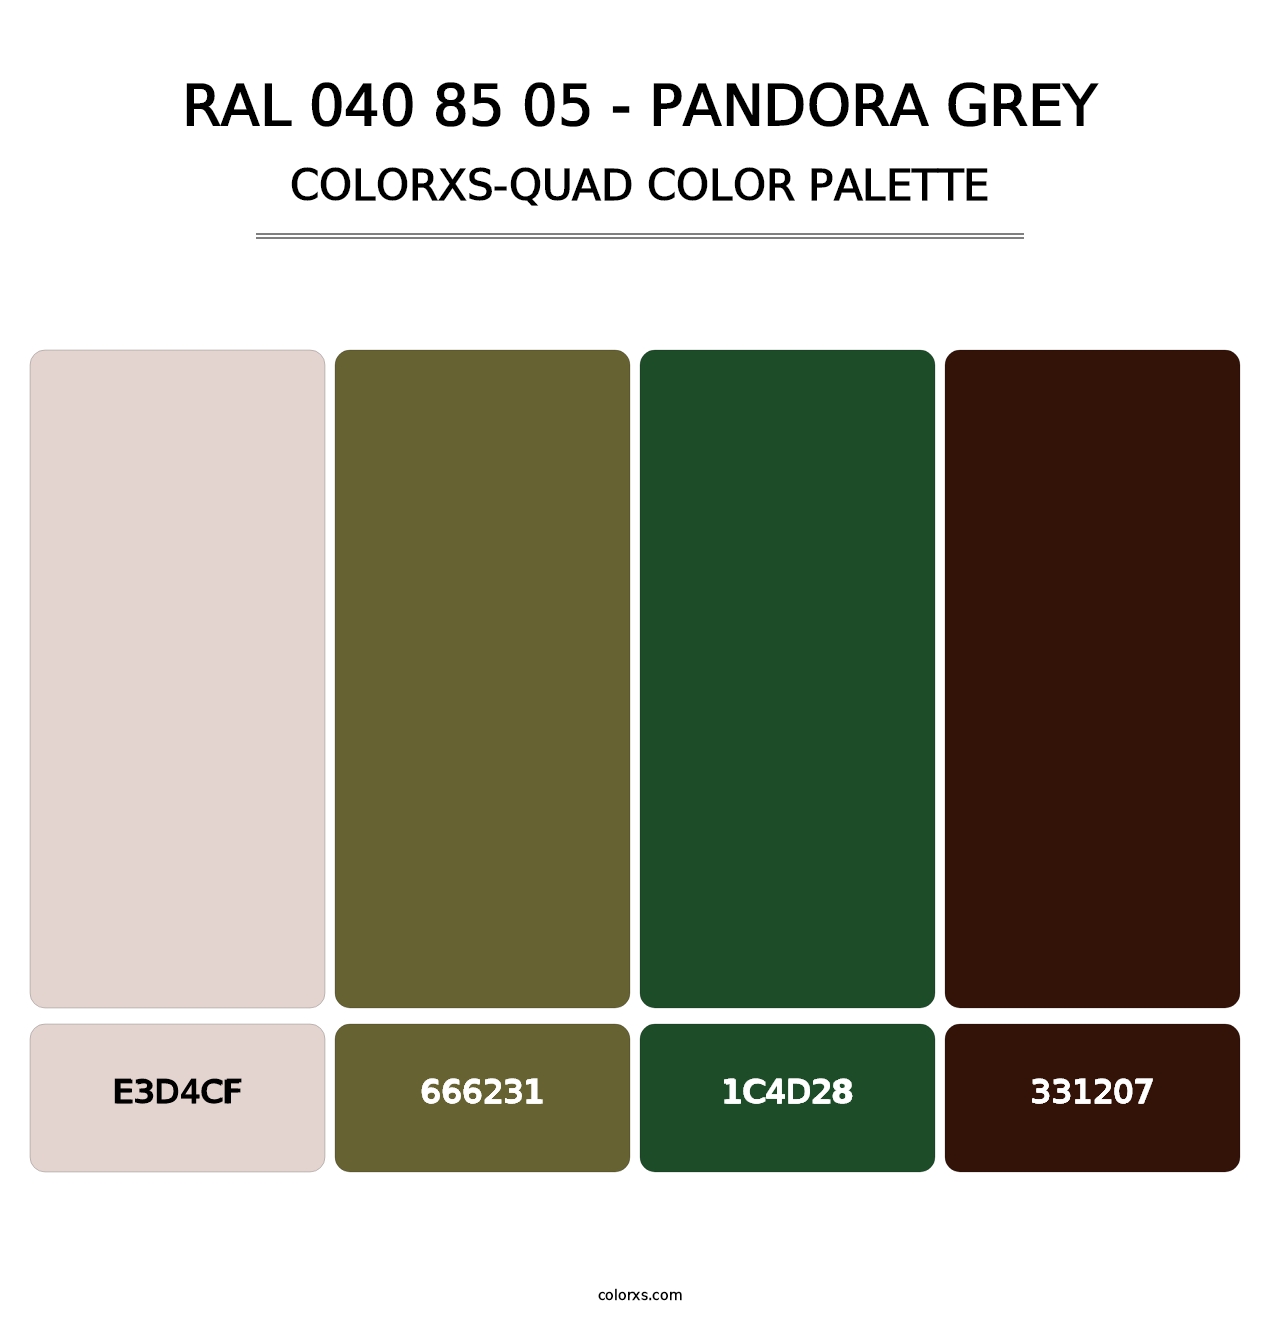 RAL 040 85 05 - Pandora Grey - Colorxs Quad Palette